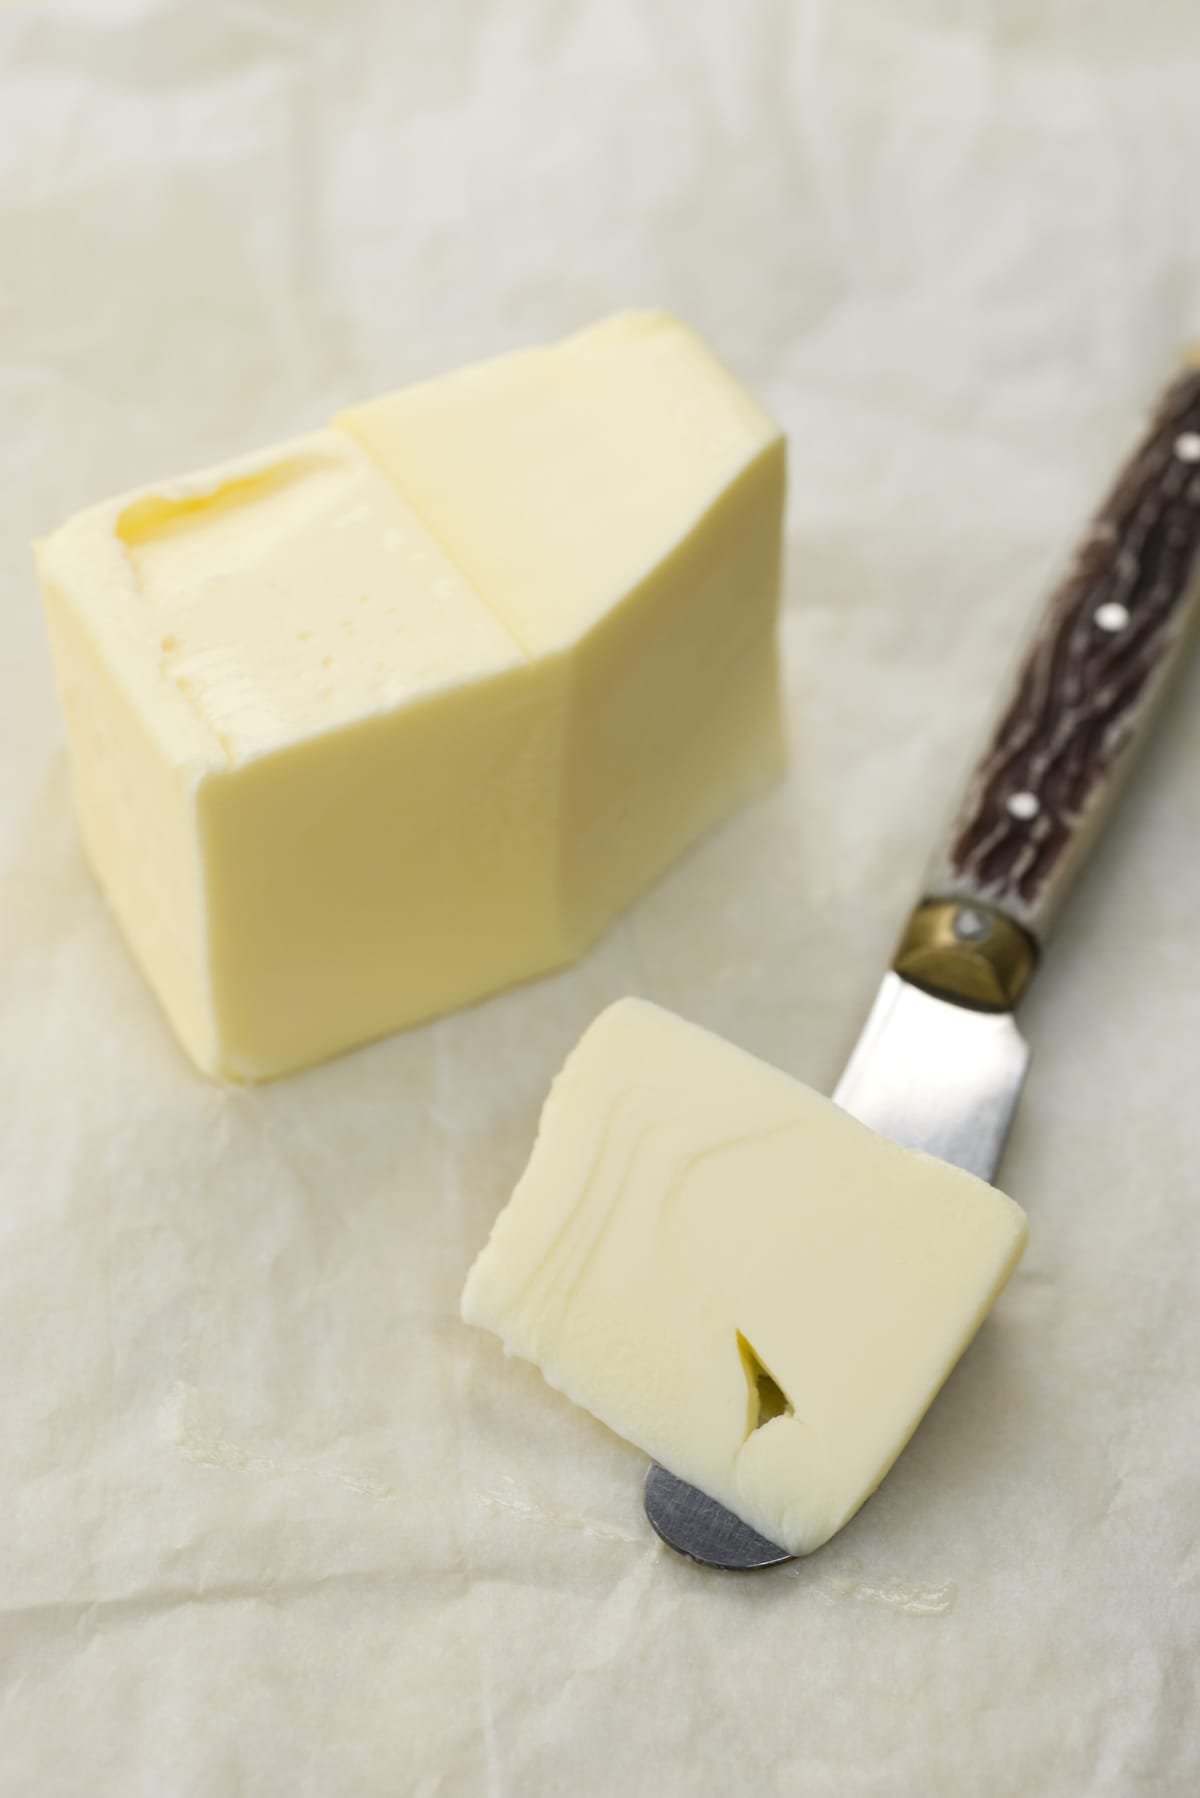 A cut up stick of butter next to a butter knife.